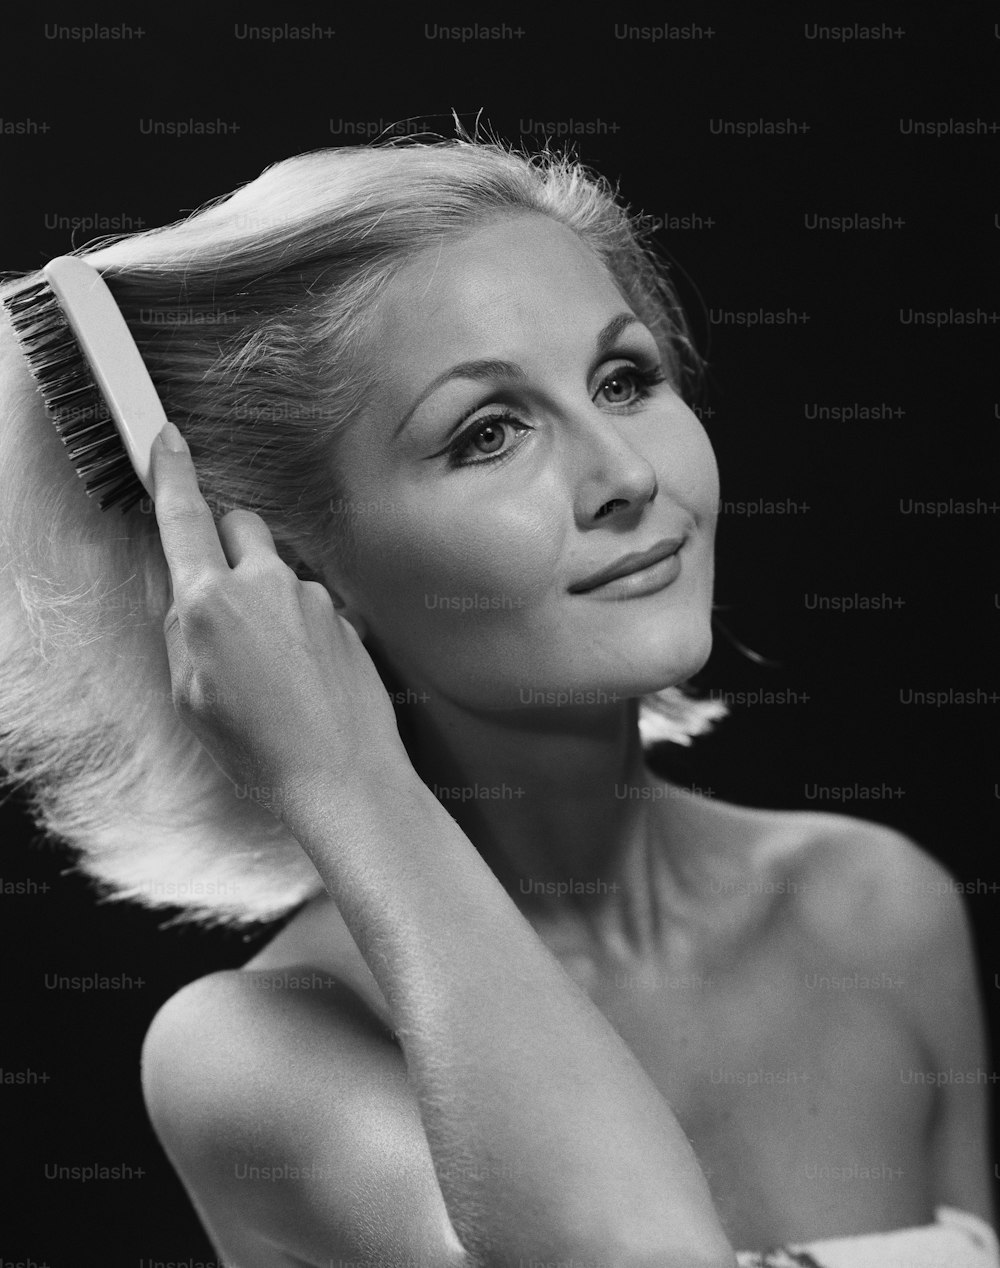 Una foto en blanco y negro de una mujer cepillándose el pelo